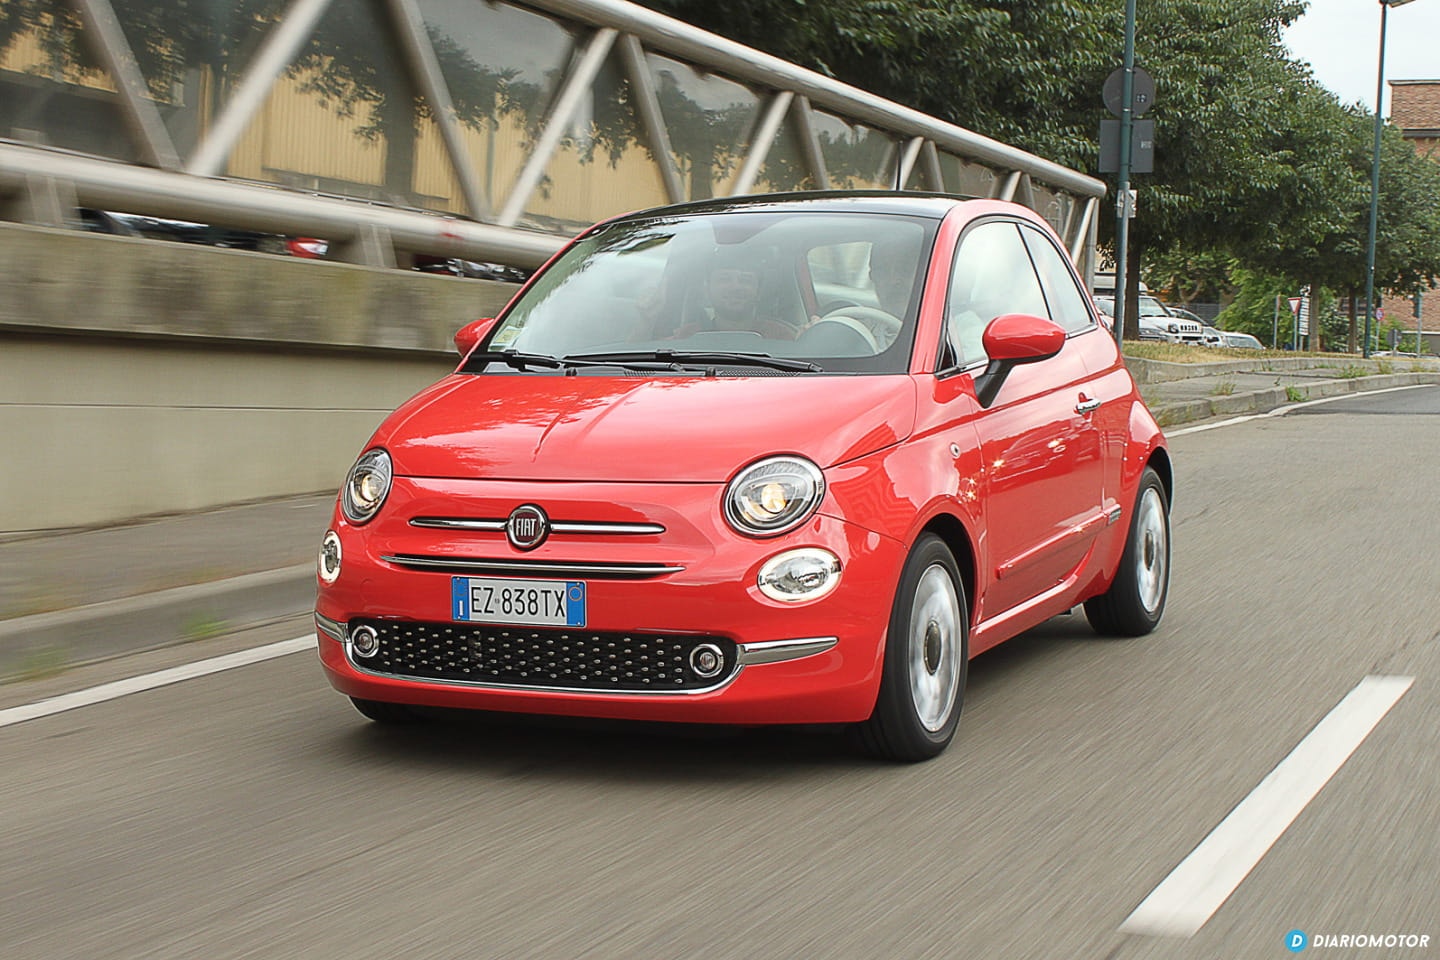 Vista dinámica Fiat 500 en rojo, destacando su diseño compacto y estilizado.